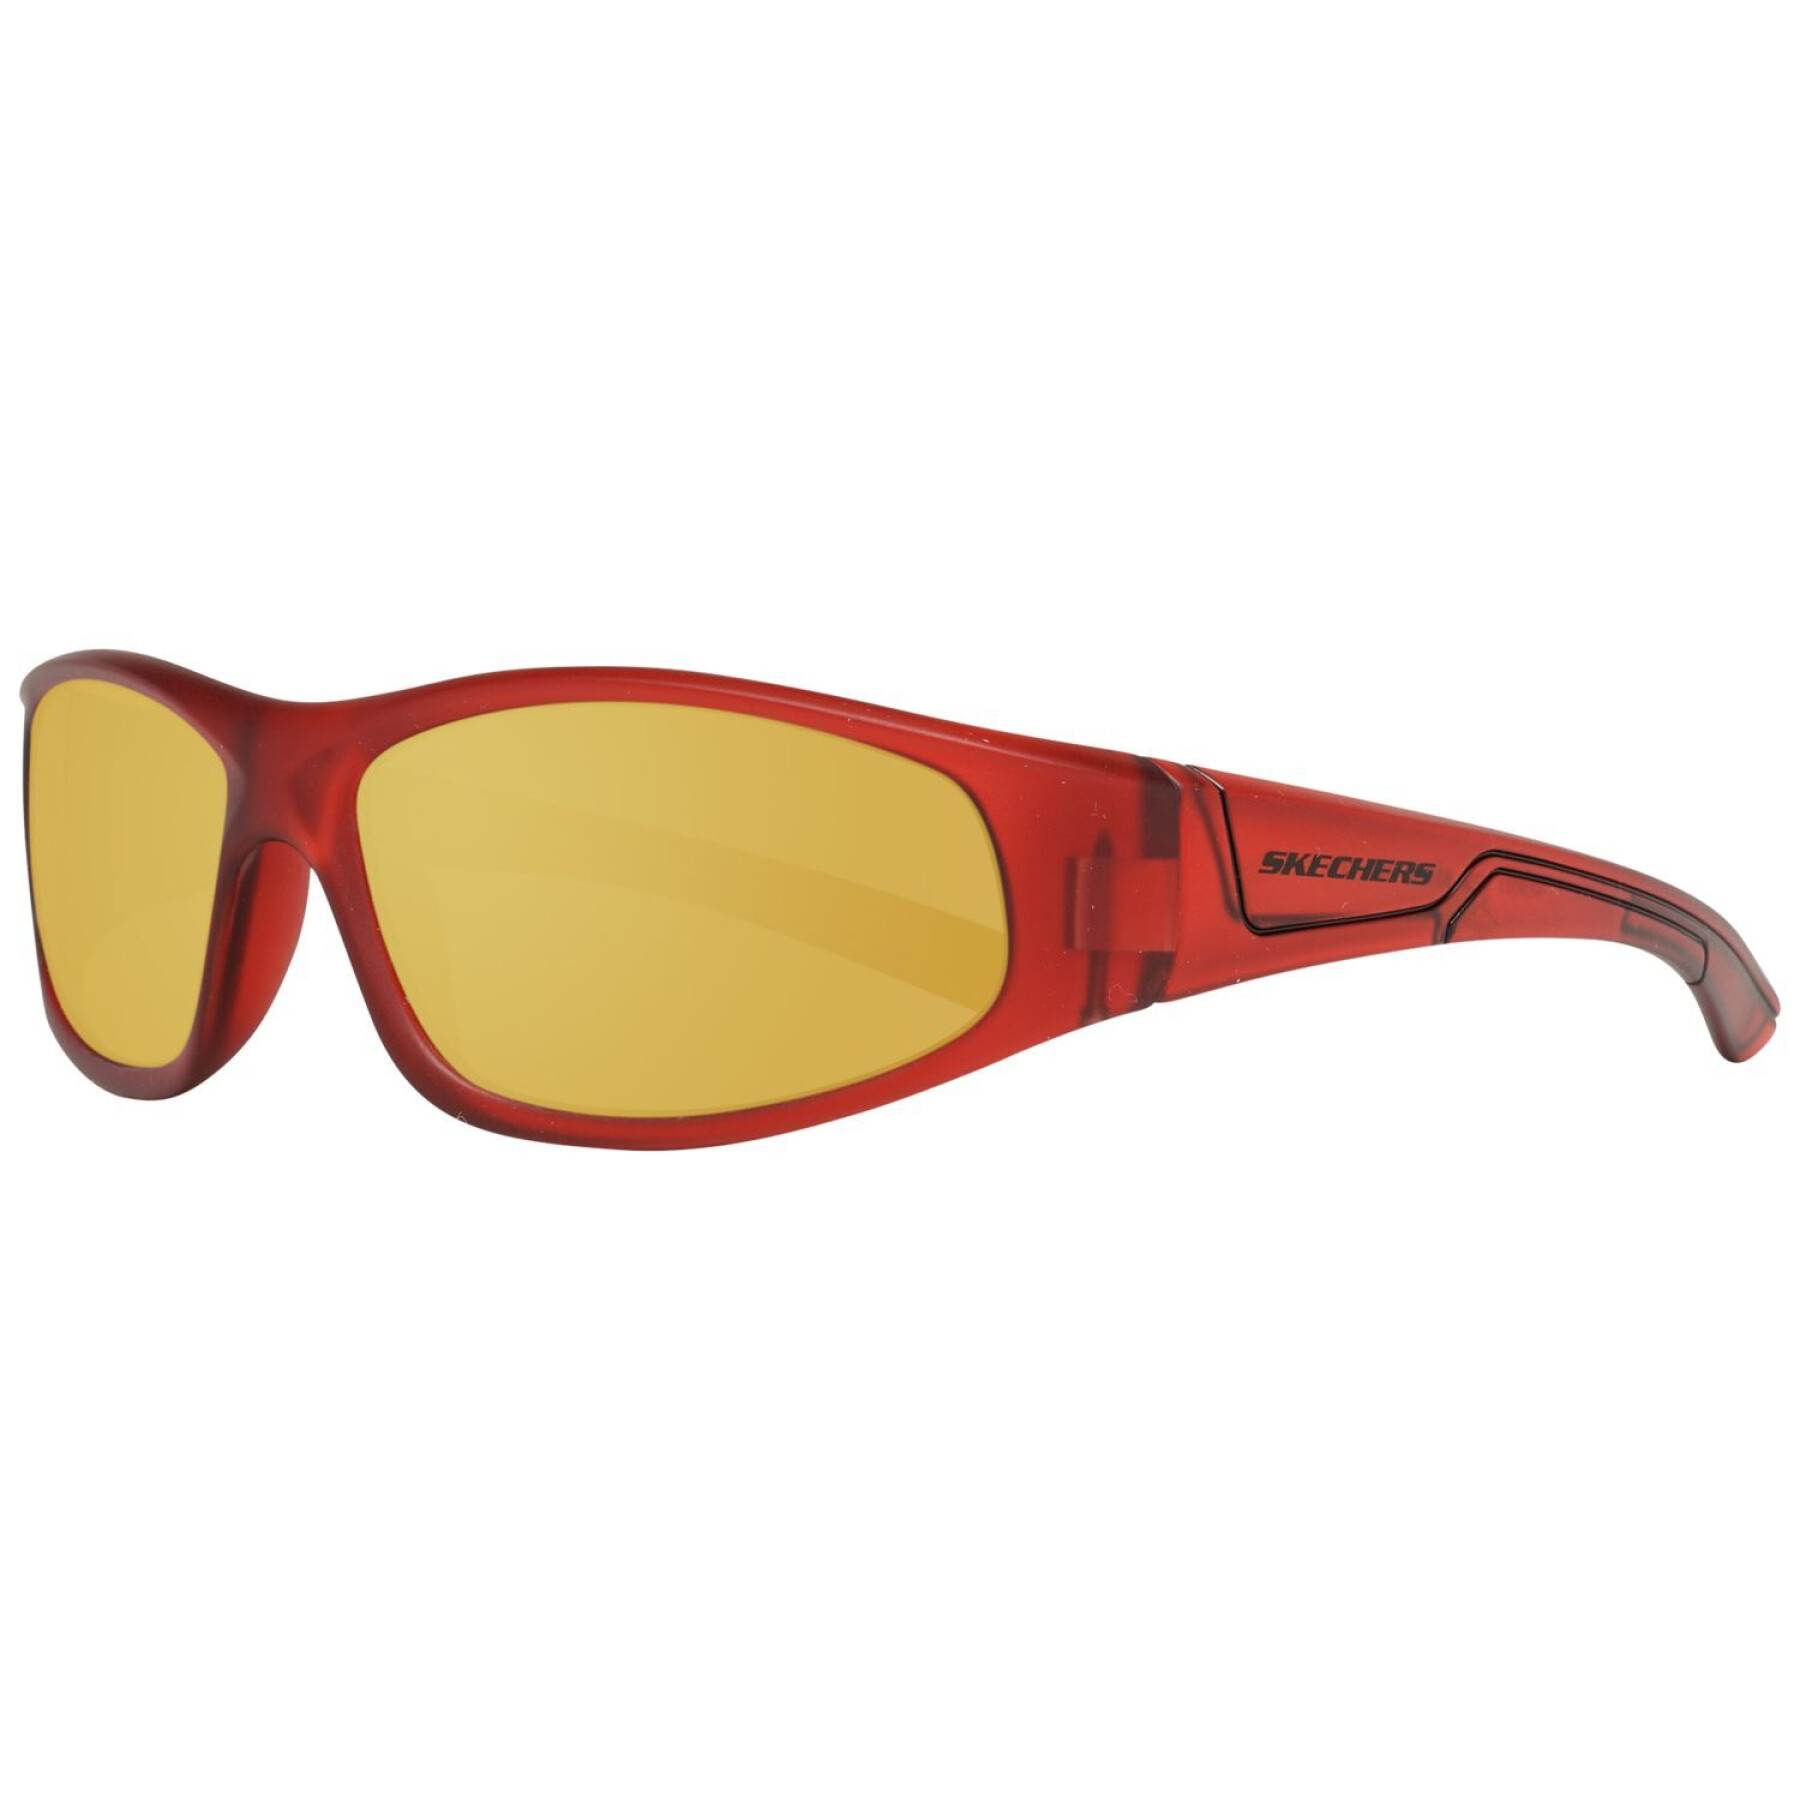 Children's sunglasses Skechers SE9003-5367U